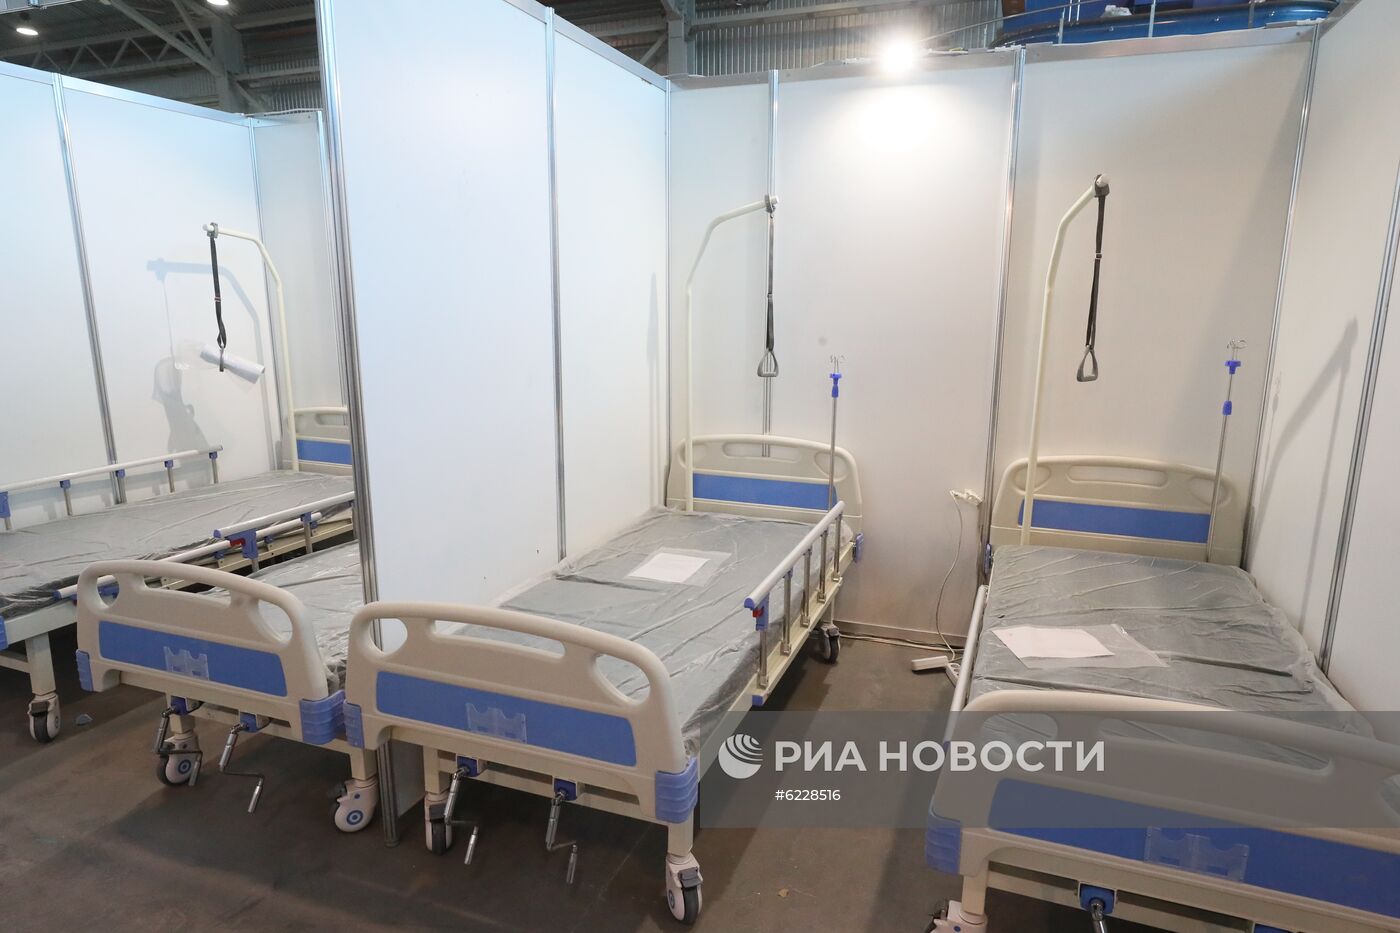 Подготовка к открытию госпиталя для пациентов с коронавирусом в Ленэкспо